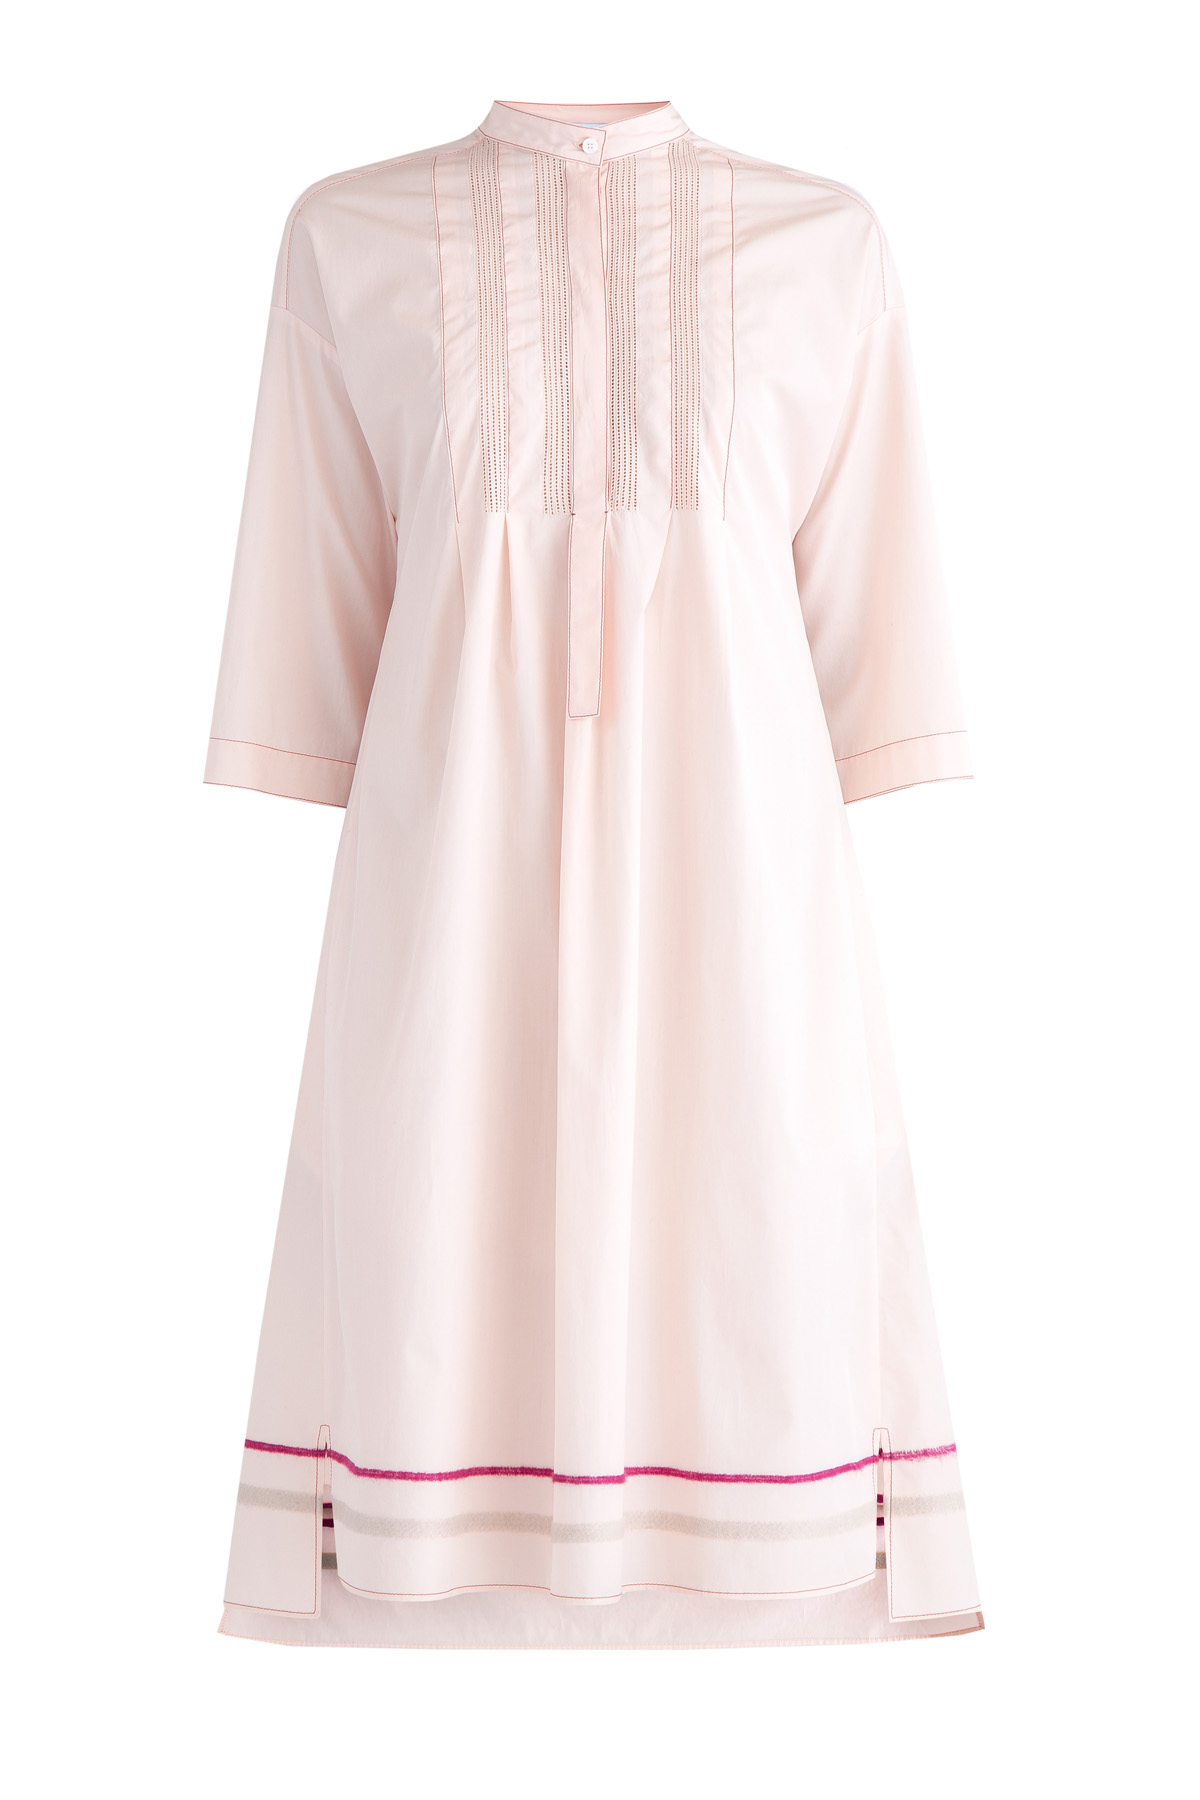 Платье из хлопка с декором цветными нитями и перфорацией AGNONA, размер 42 - фото 1